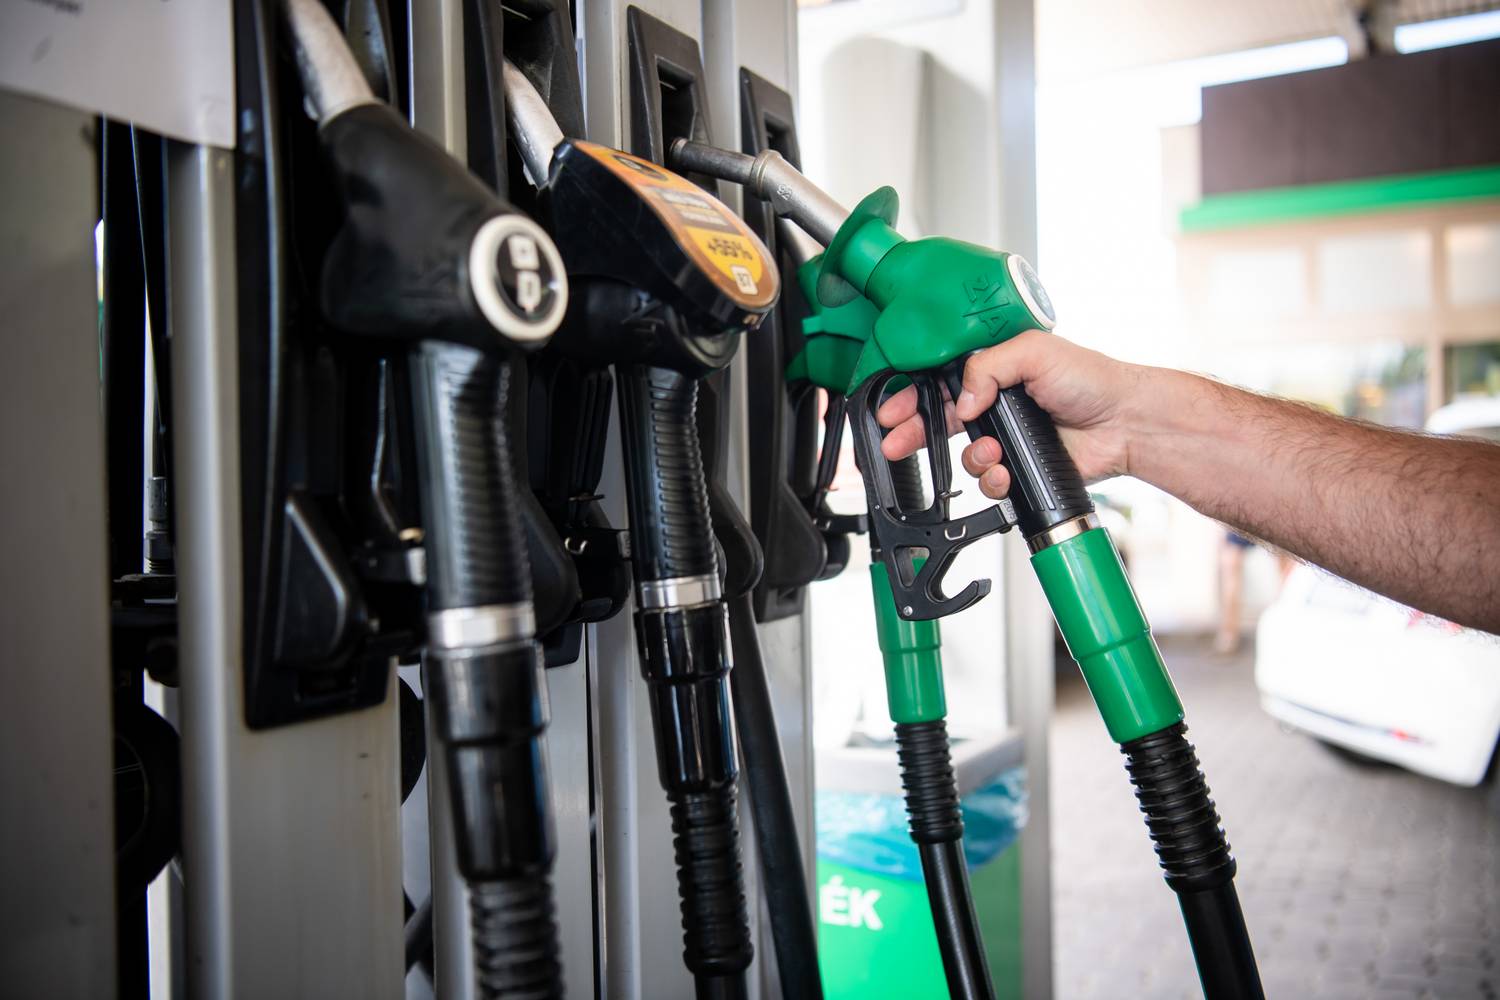 Hétfőn tovább csökken a benzin ára